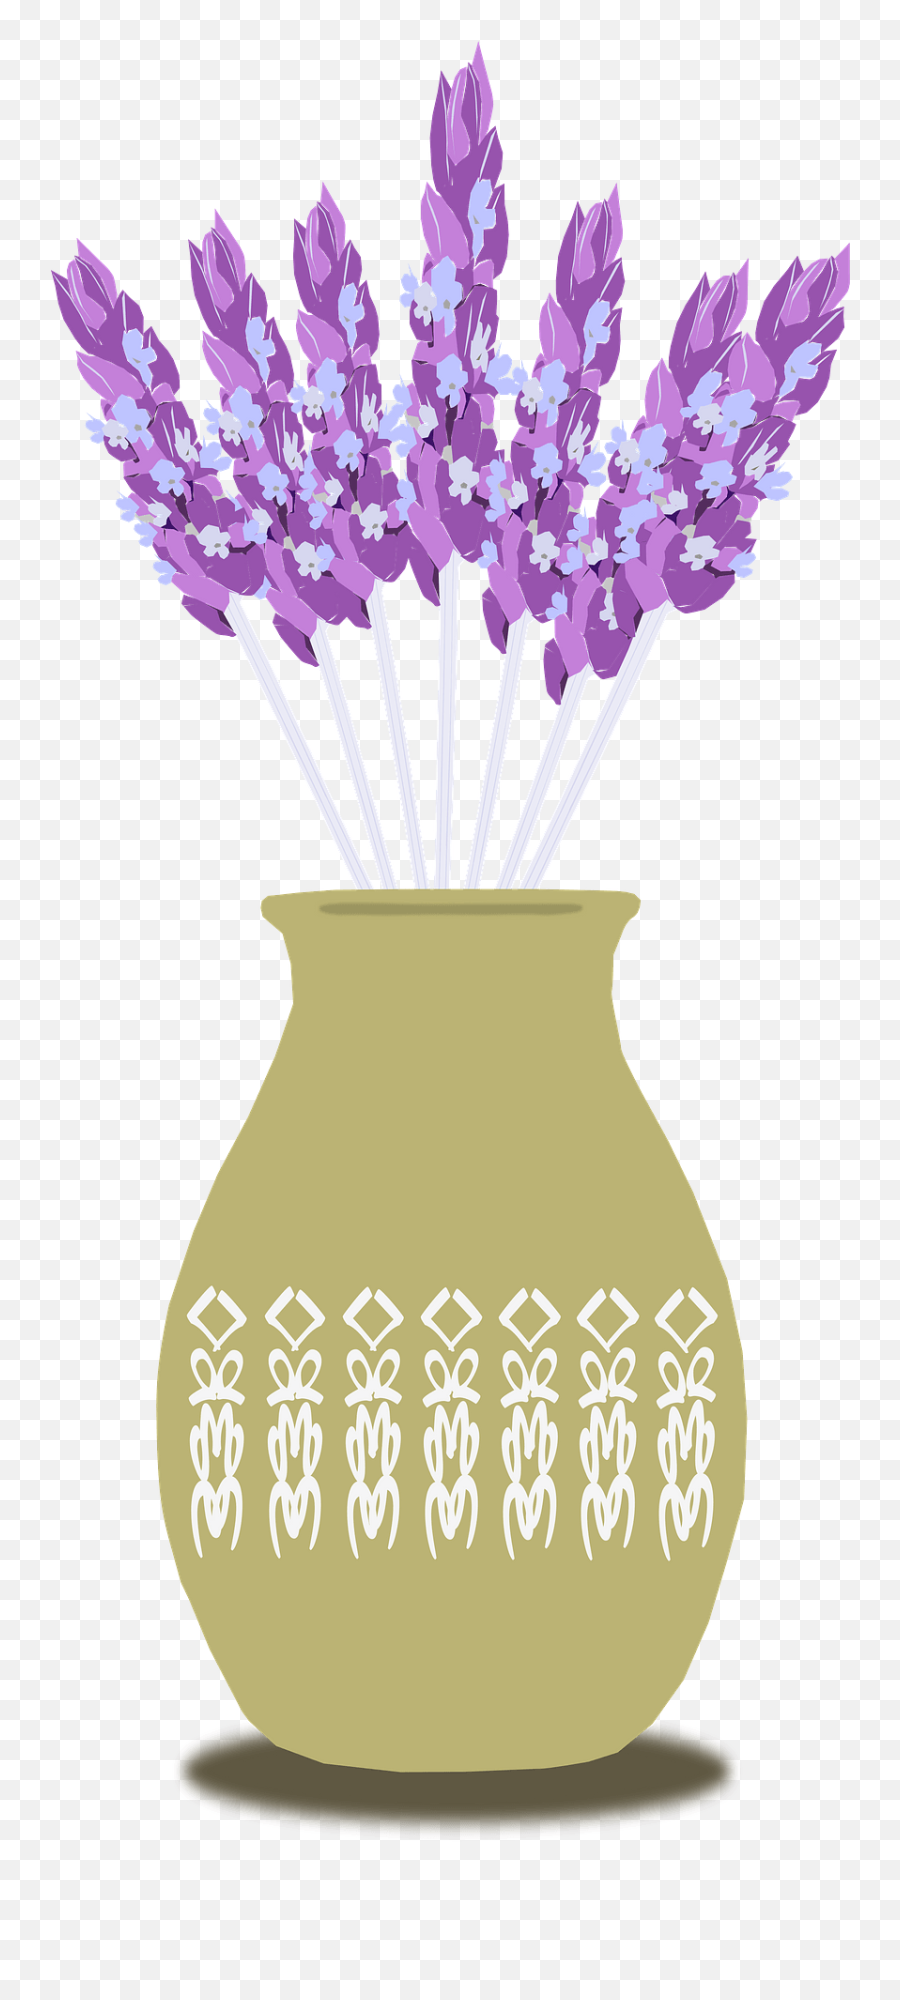 Lavender In Tan Vase Clipart - Vase Of Lavender Clipart Emoji,Lavender Clipart